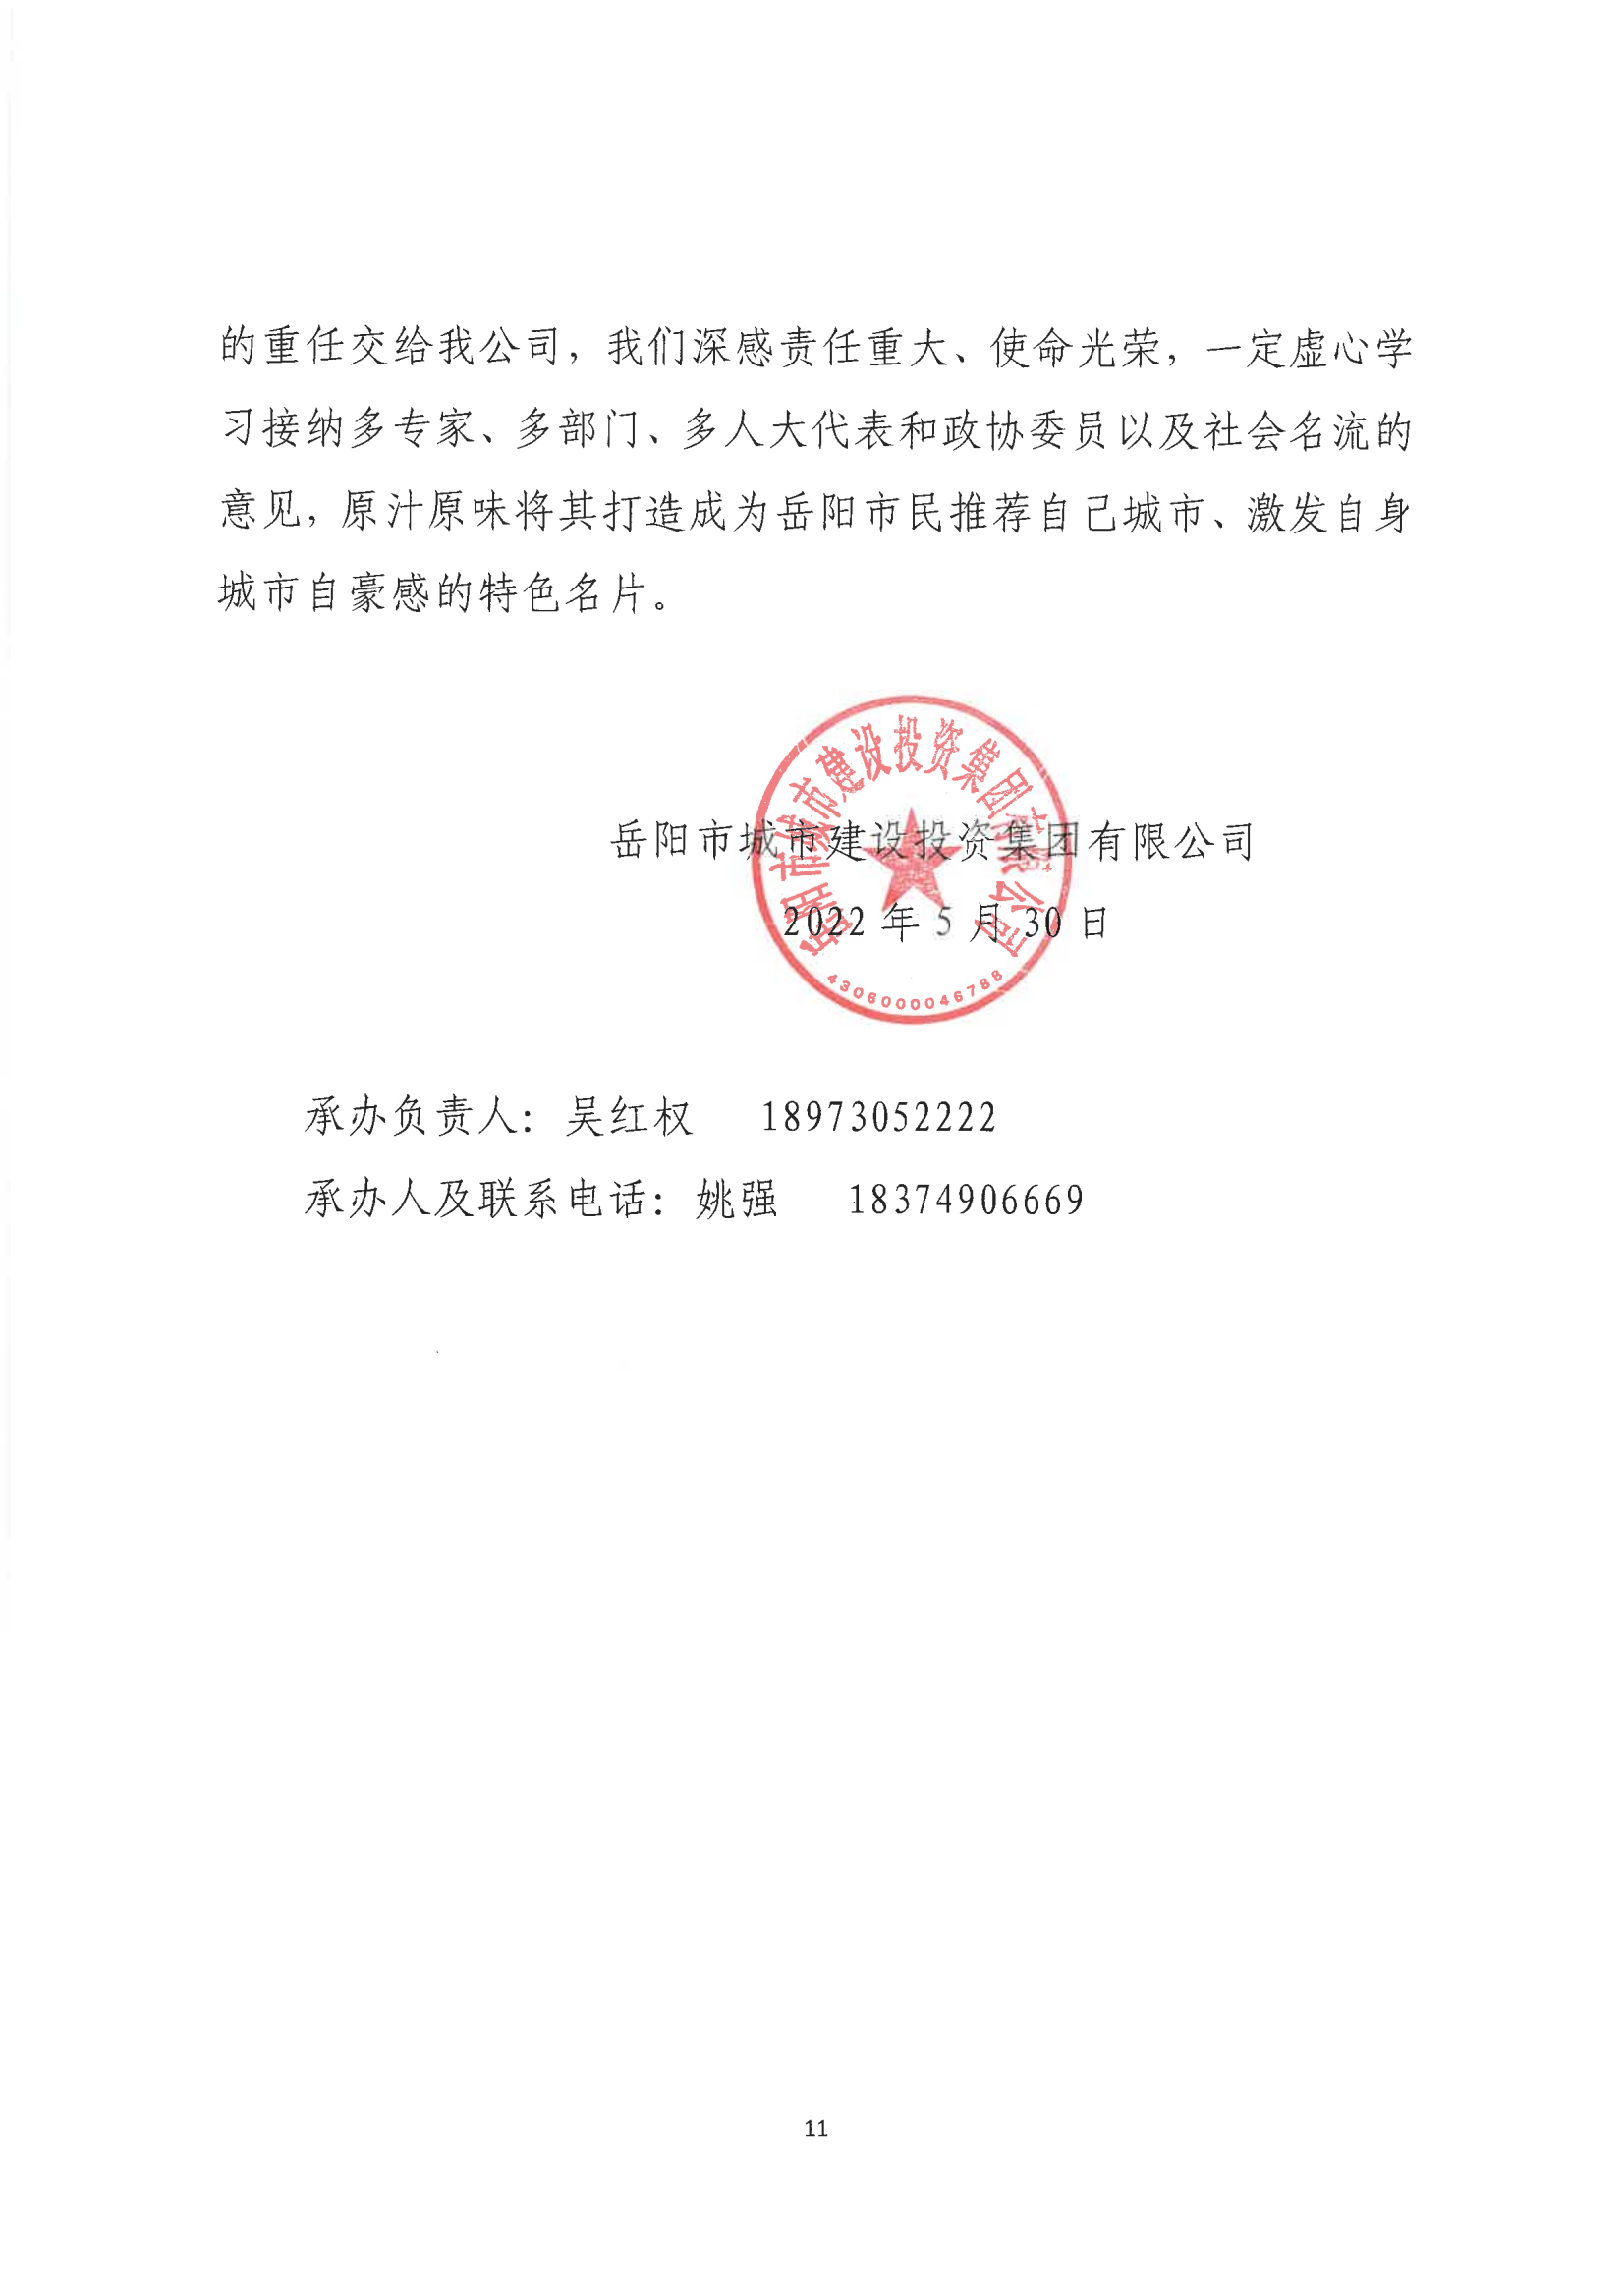 001号提案关于岳阳市政协九届一次会议第001号提案的回复(1)_10.png